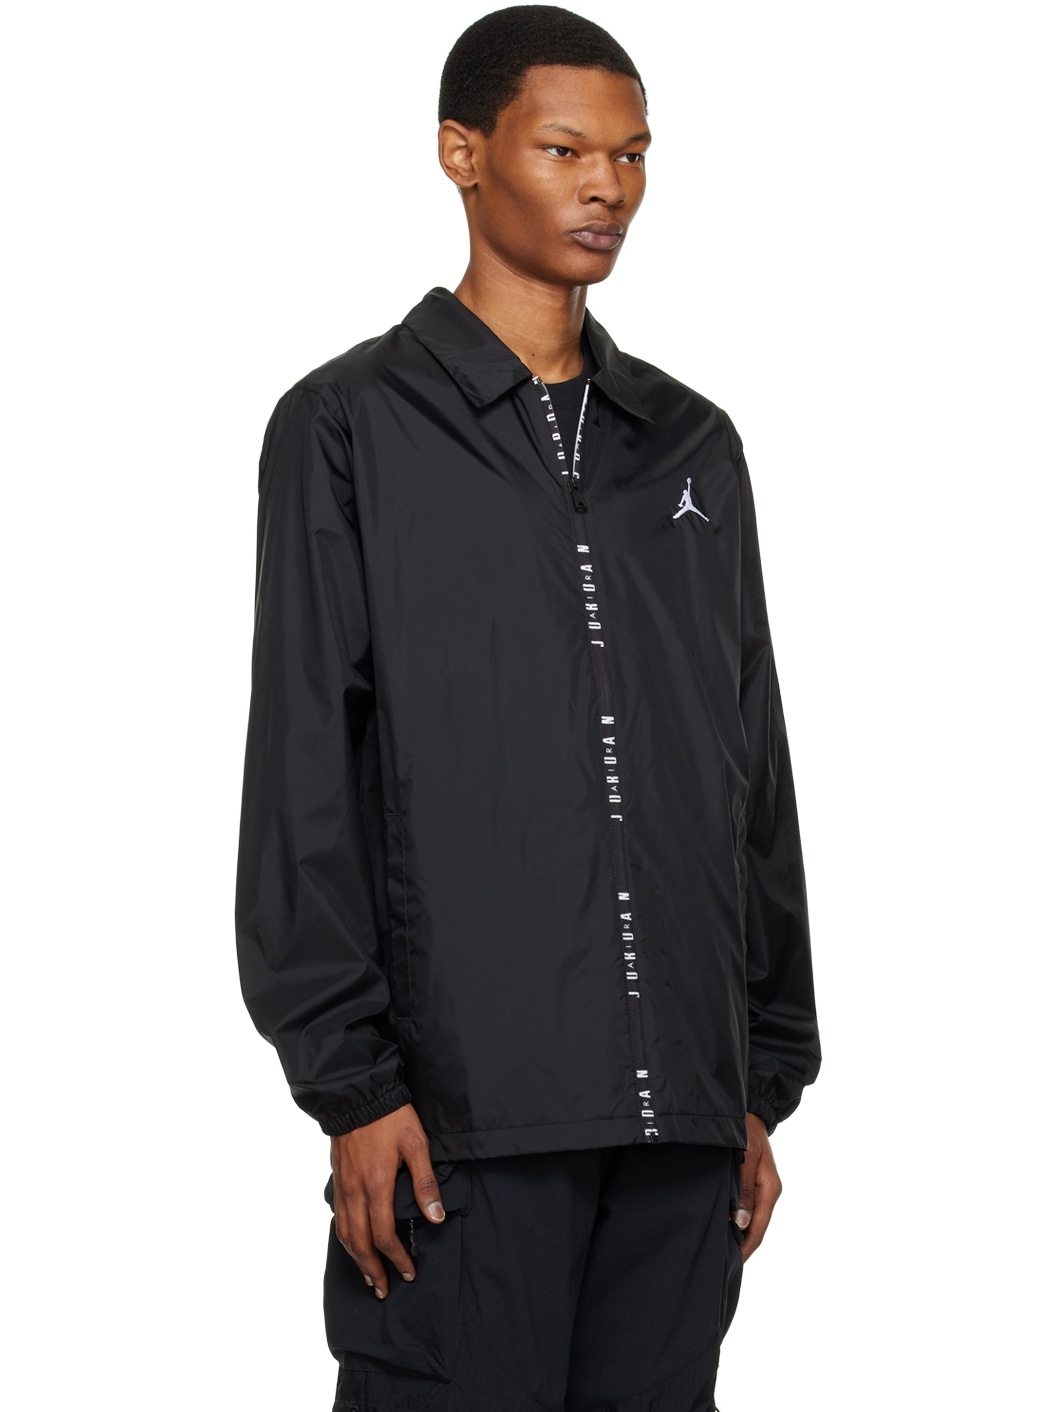 Black Jordan Essentials Jacket - 2